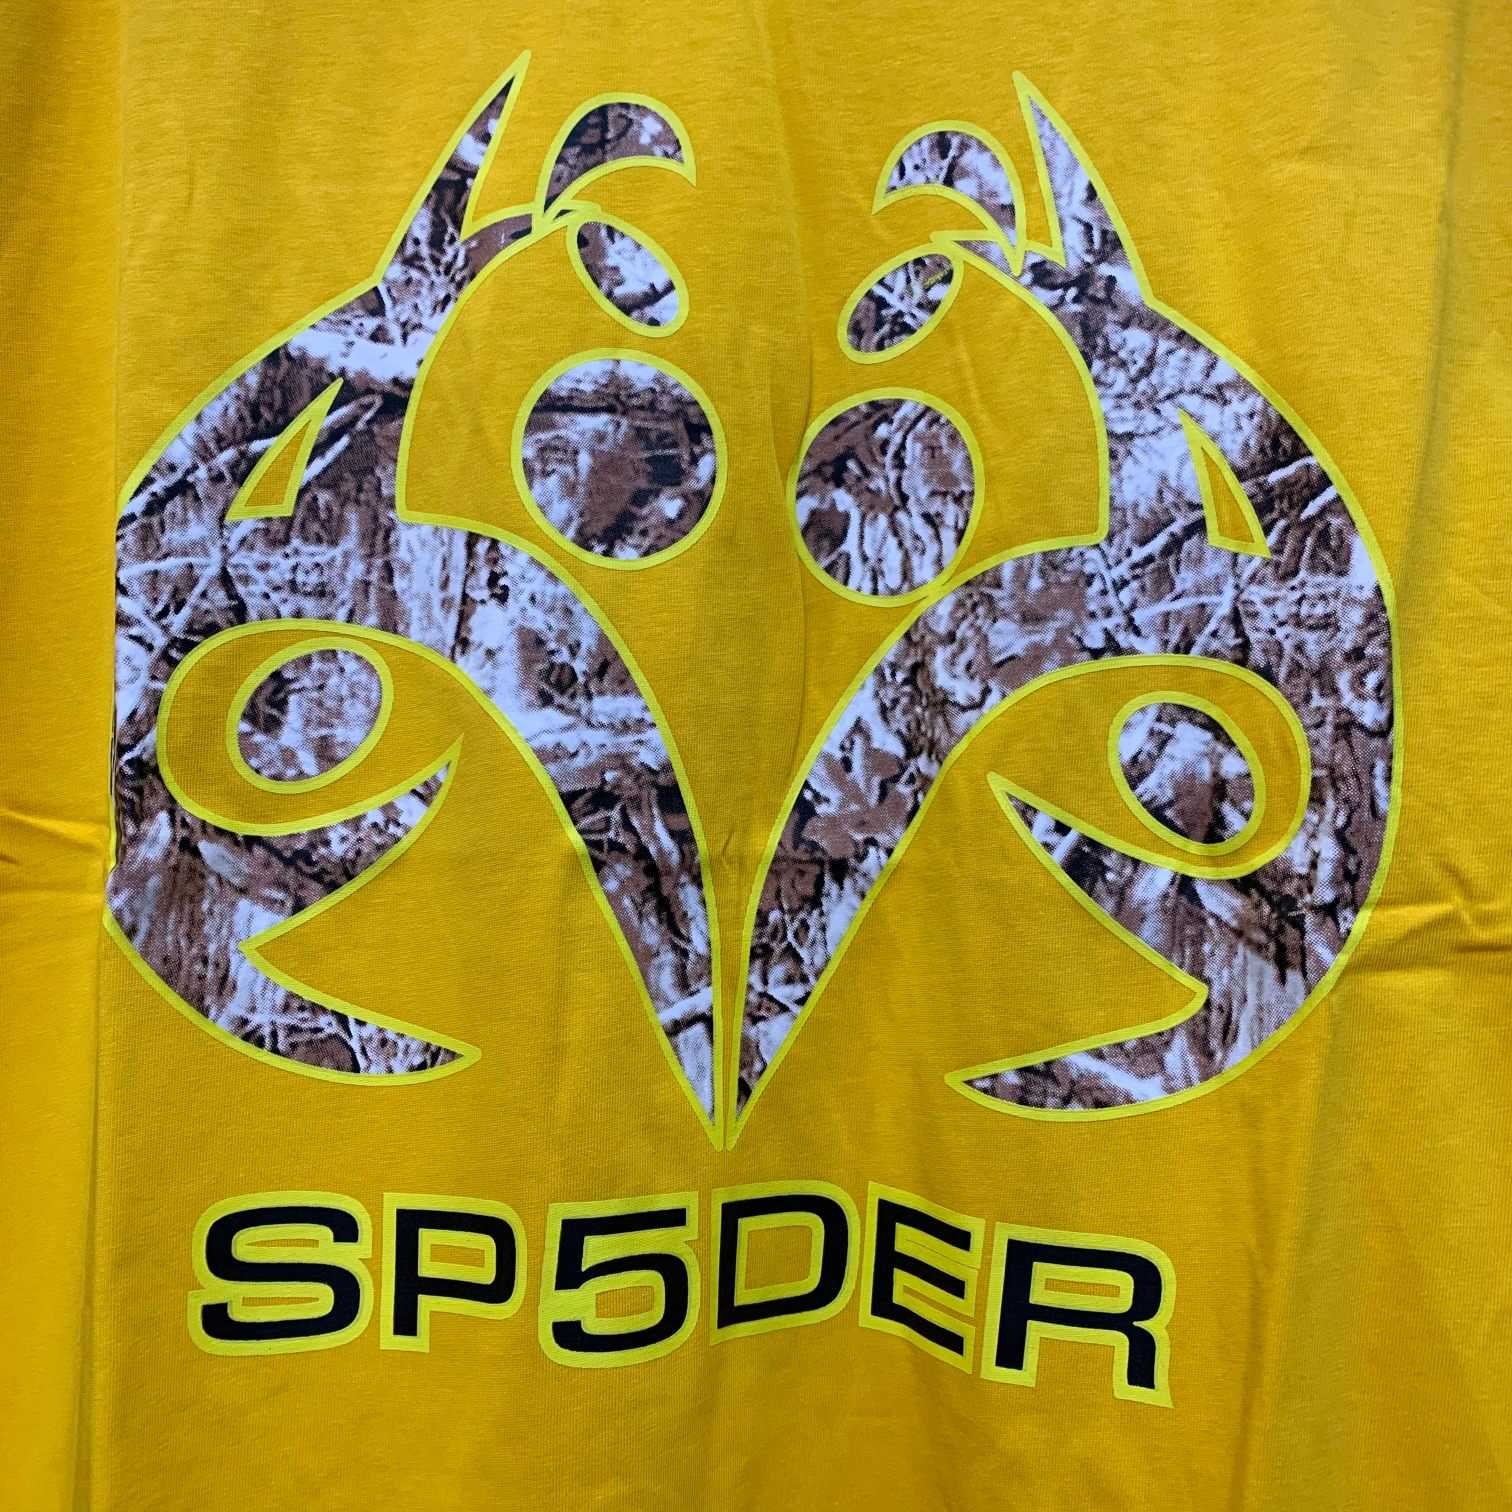 Spider Spider Worldwide Sp5der Real Tree  - PerfectKickZ